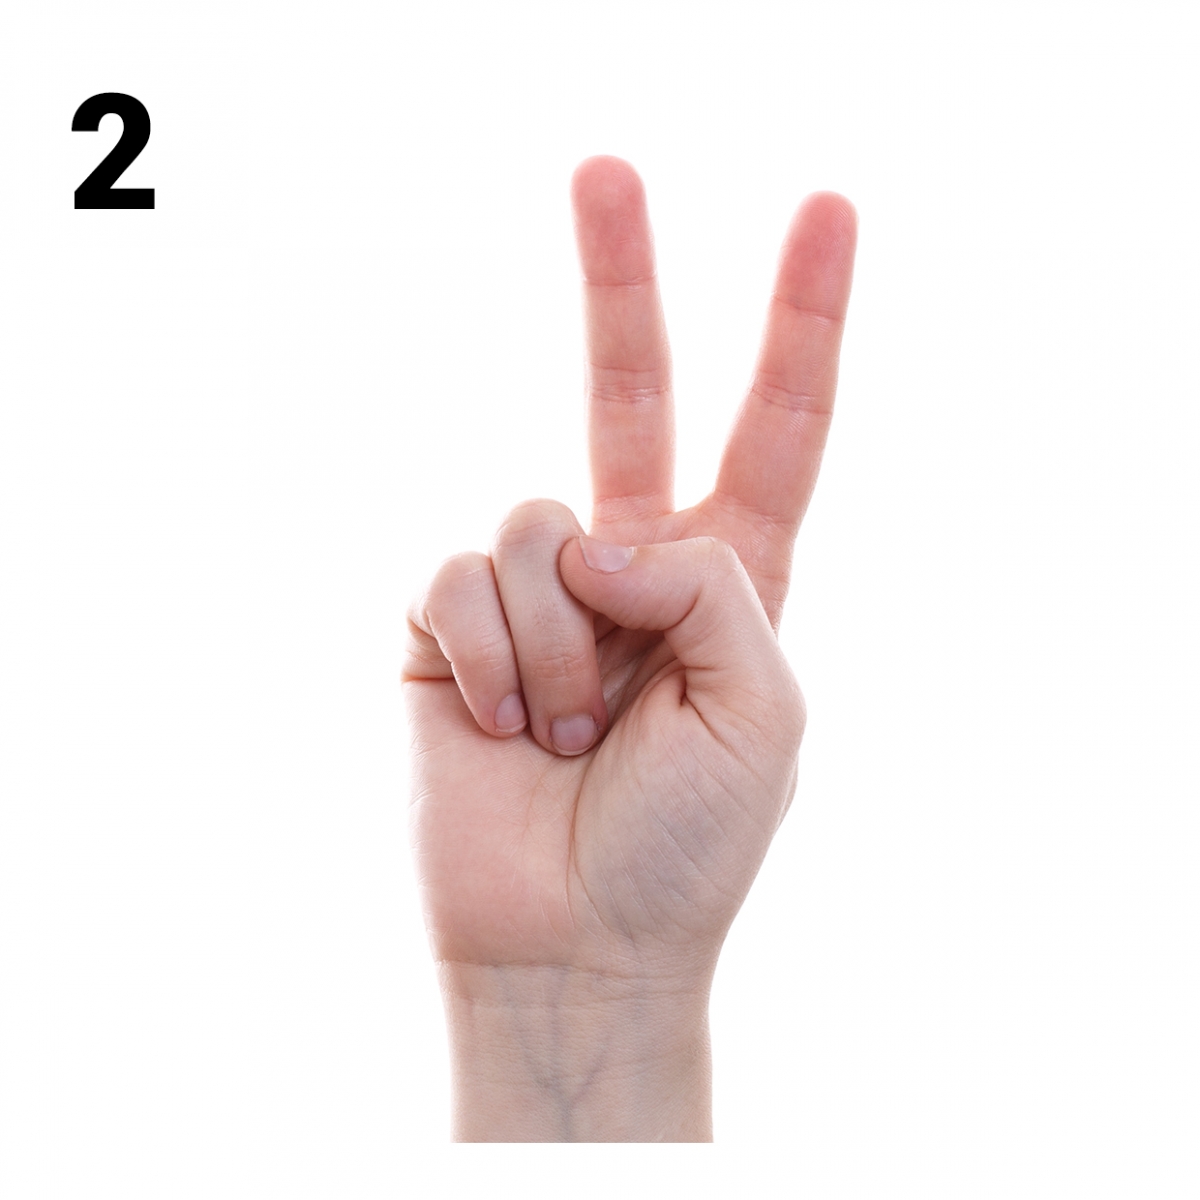 Imagen en la que se representa el número dos